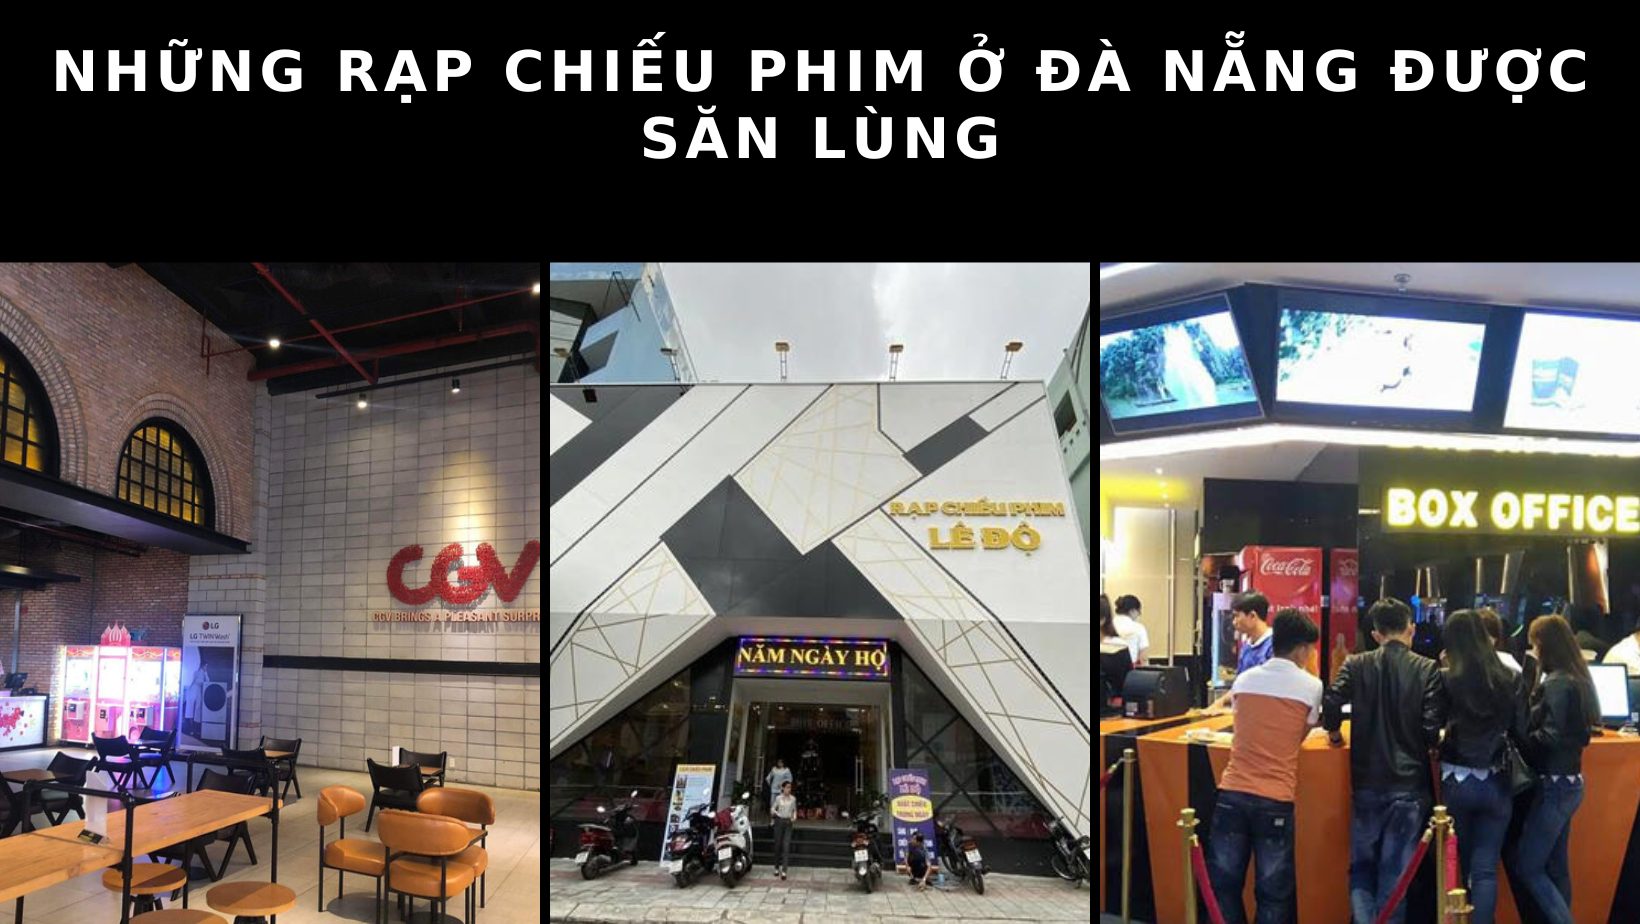 Những rạp chiếu phim ở Đà Nẵng được săn lùng nhất hiện nay